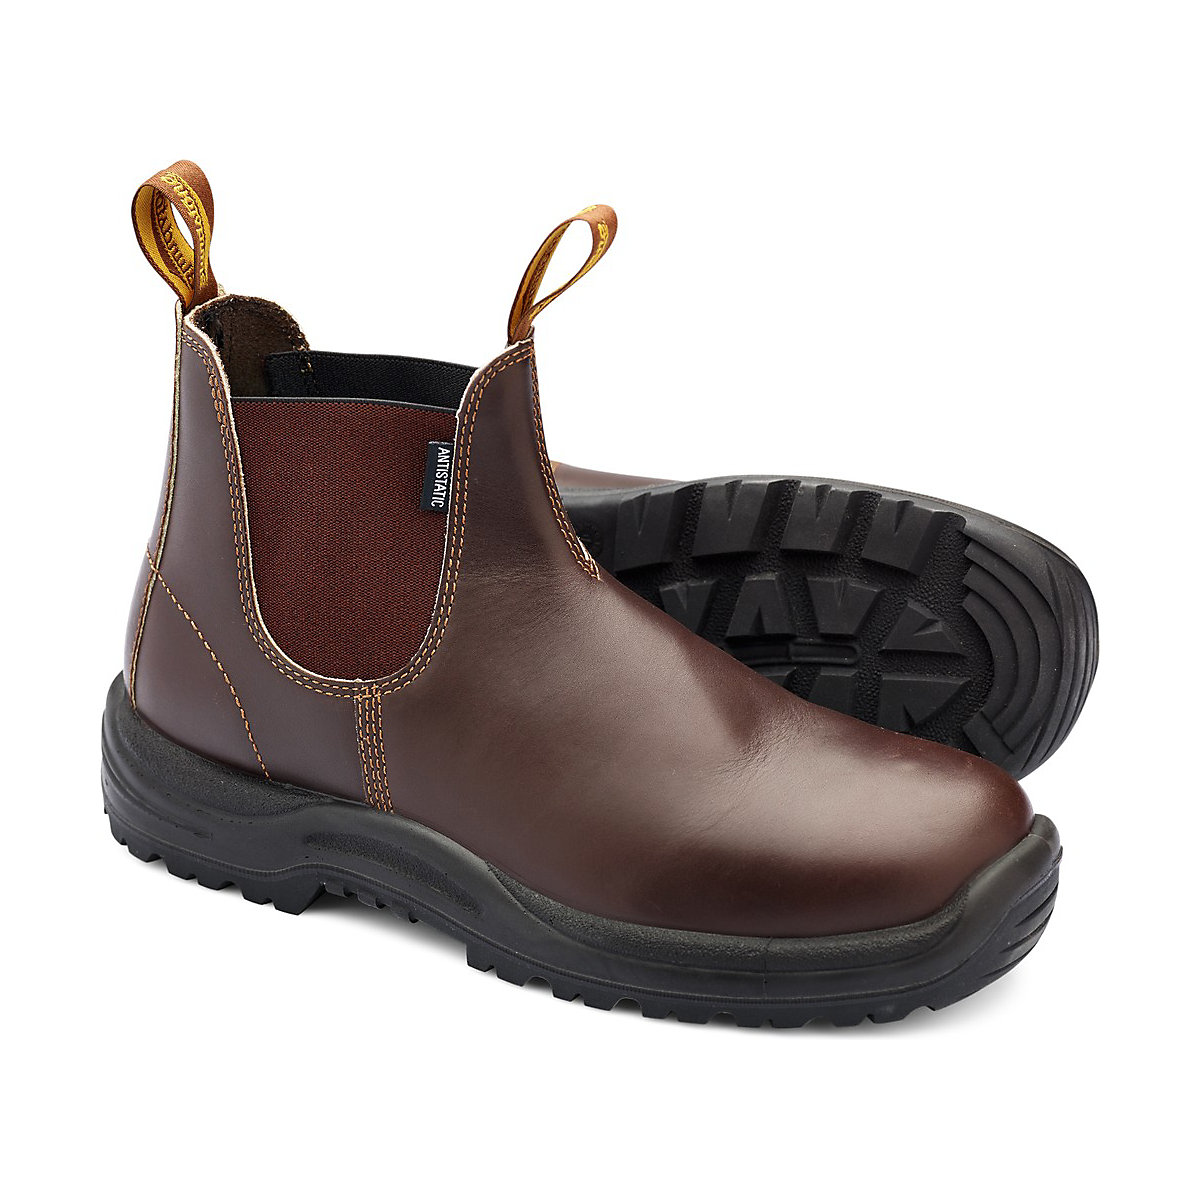 Blundstone Stiefel Boots #122 Chestnut Brown Leather (Safety Series) braun